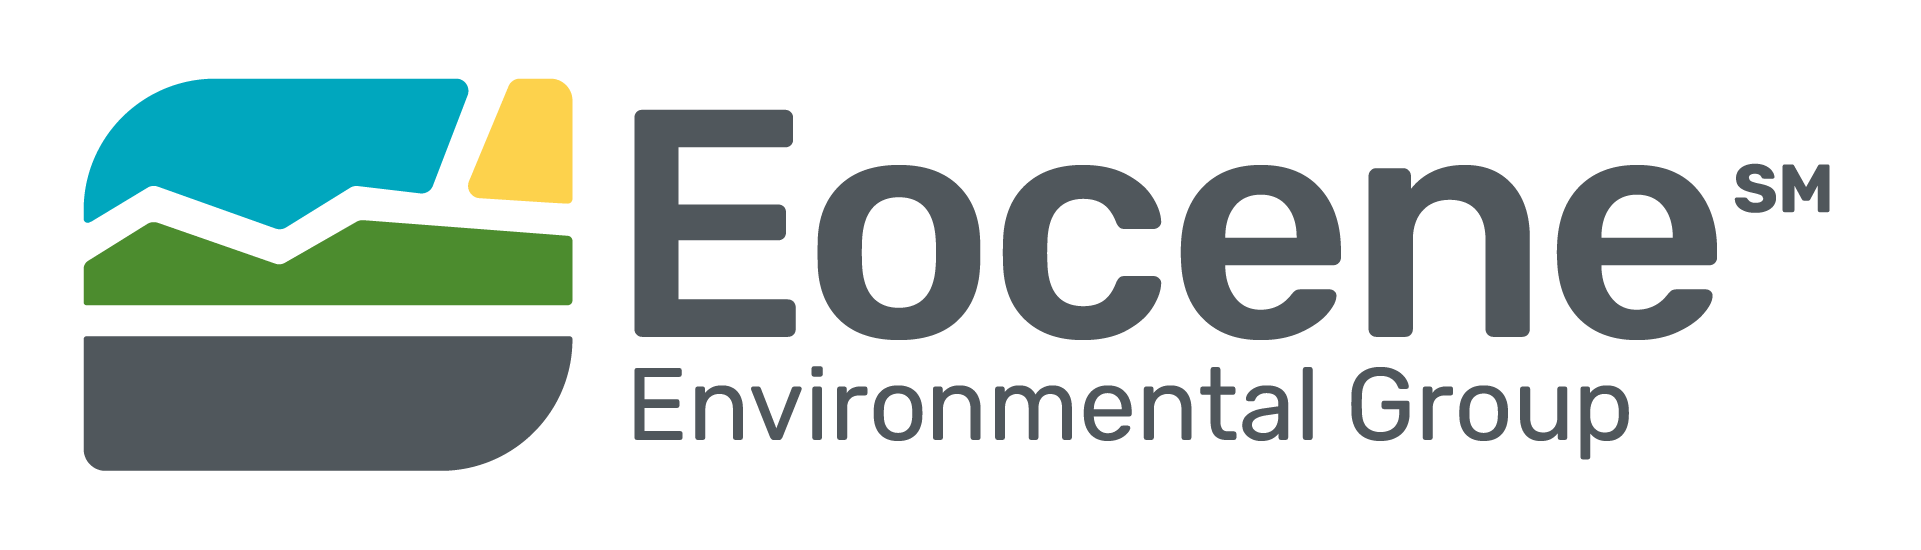 Eocene Environmental Group trademark logo